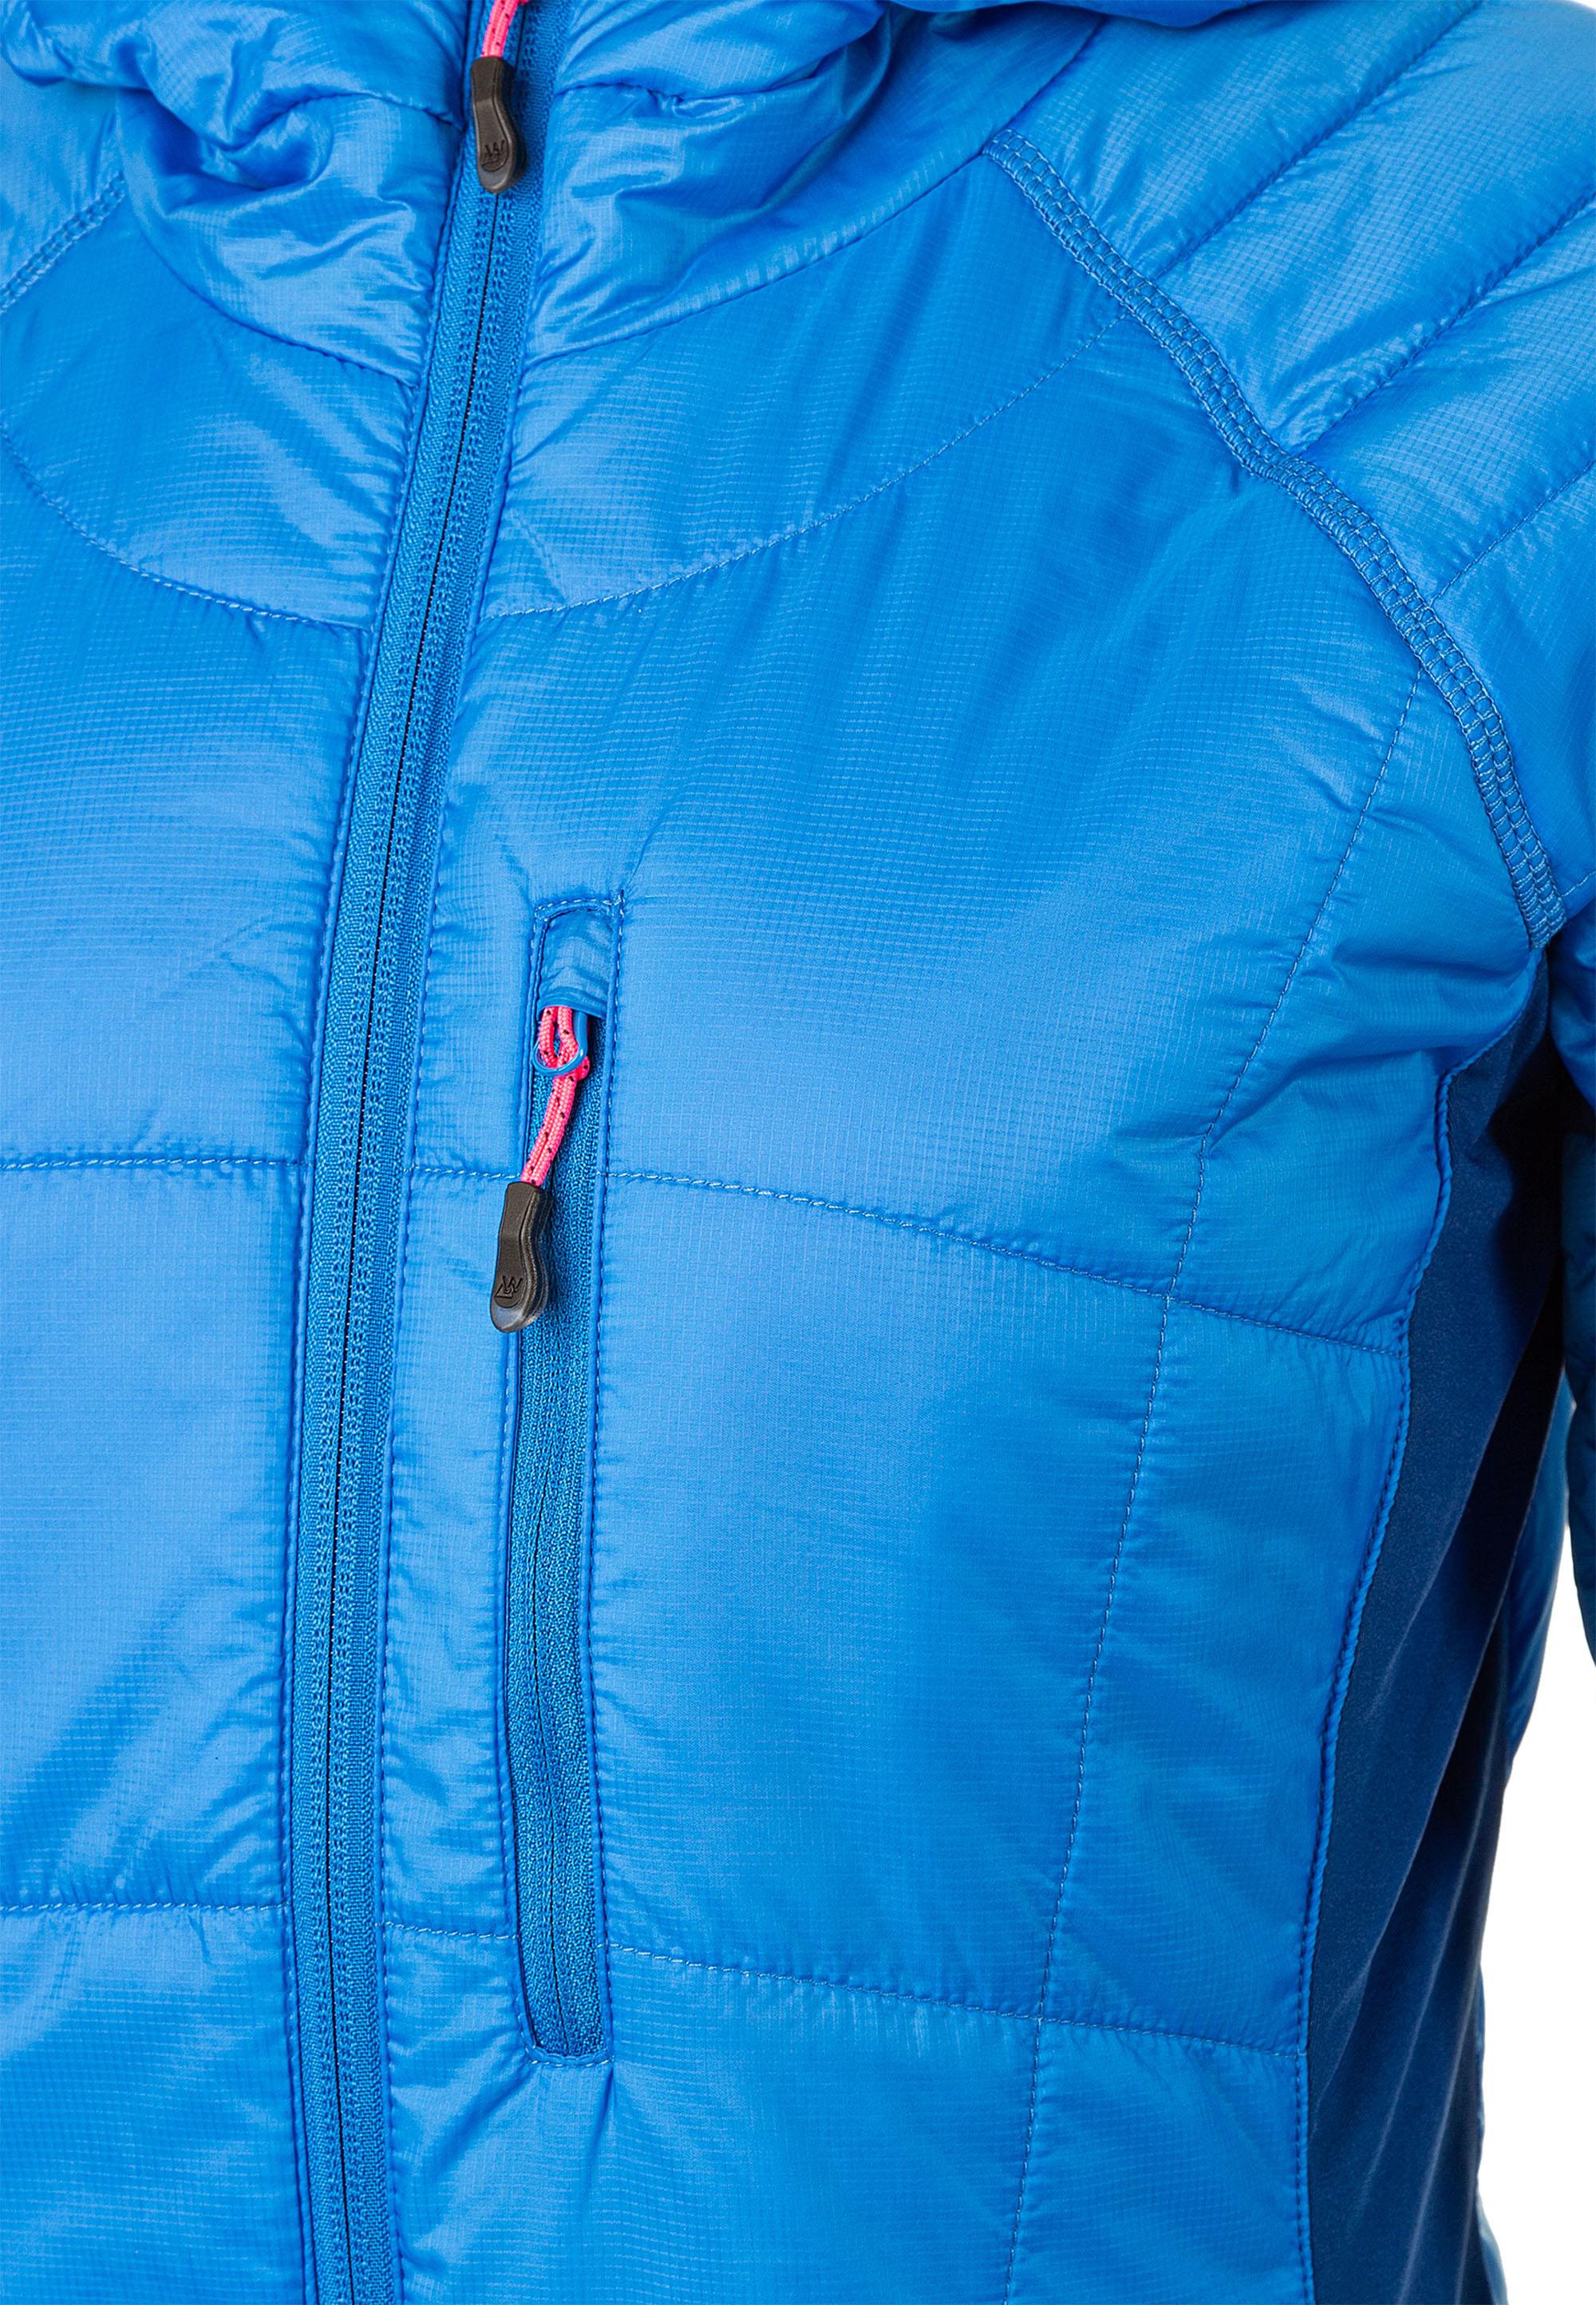 W im von Shop SportScheck Outdoorjacke 2008 kaufen MARGO Damen Jacket French Online Blue Whistler